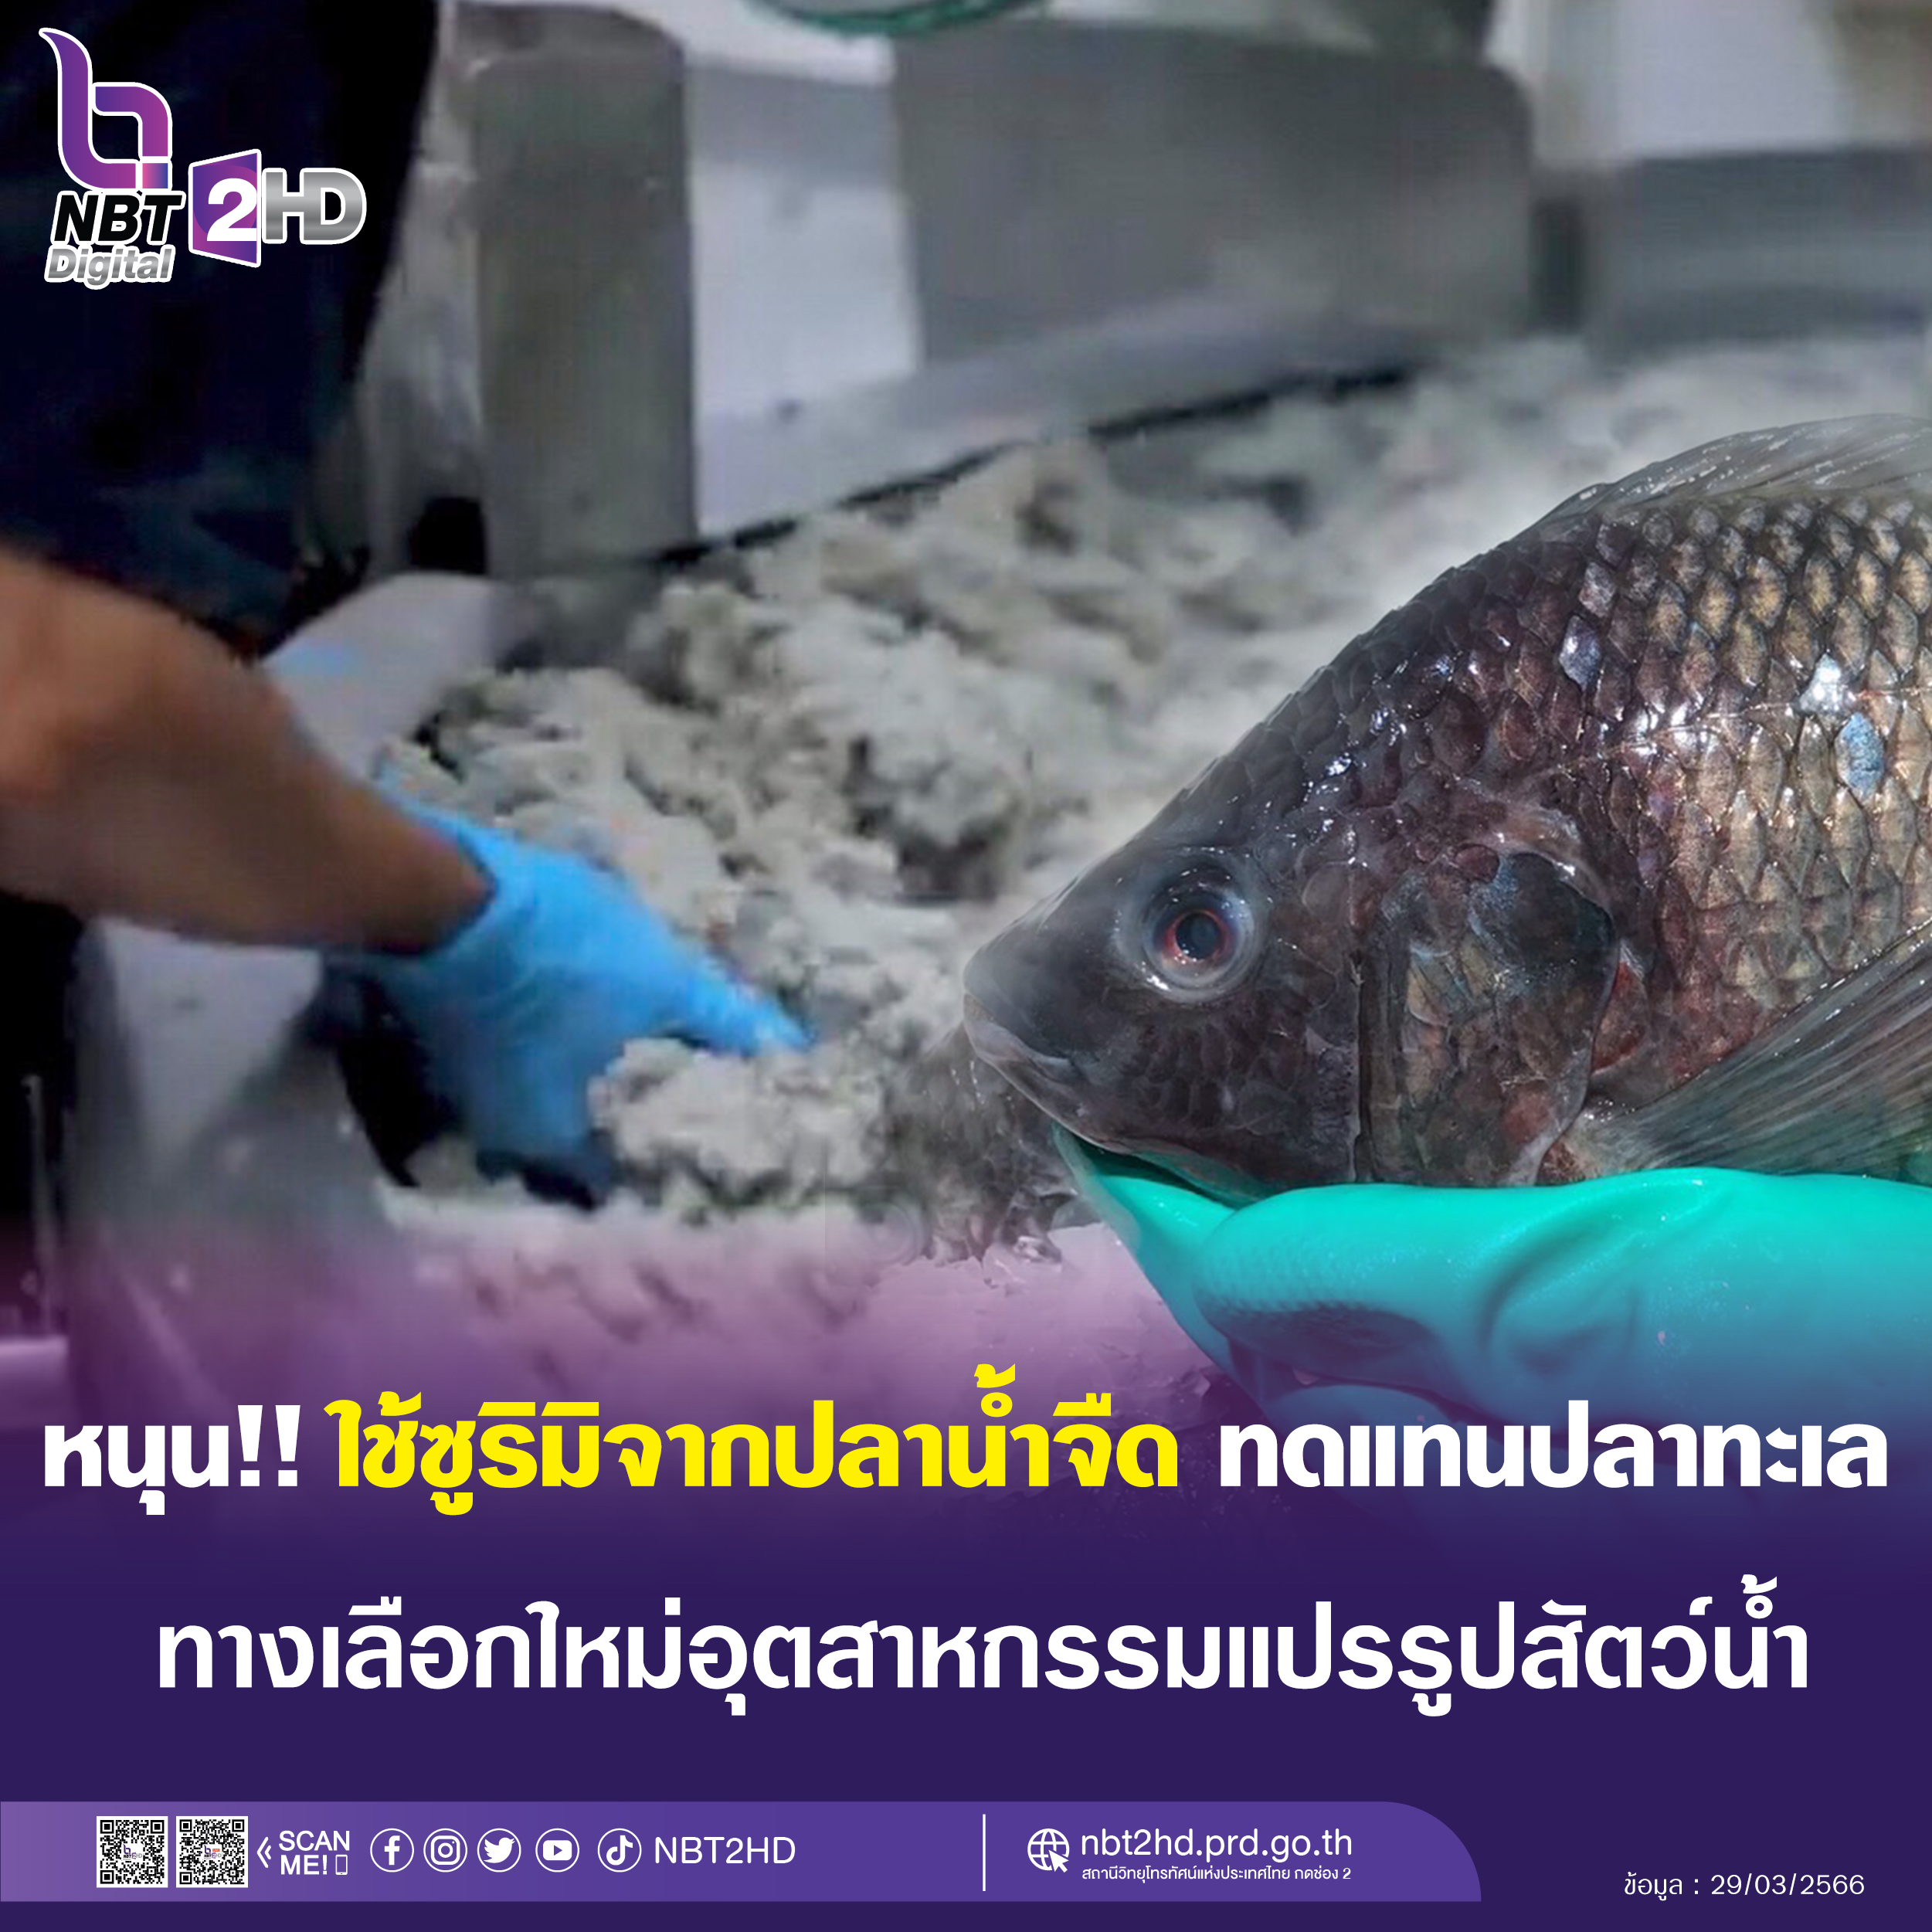 กรมประมง หนุน‼️ใช้ ซูริมิจากปลาน้ำจืดทดแทนปลาทะเล  ทางเลือกใหม่ในอุตสาหกรรมแปรรูปสัตว์น้ำ